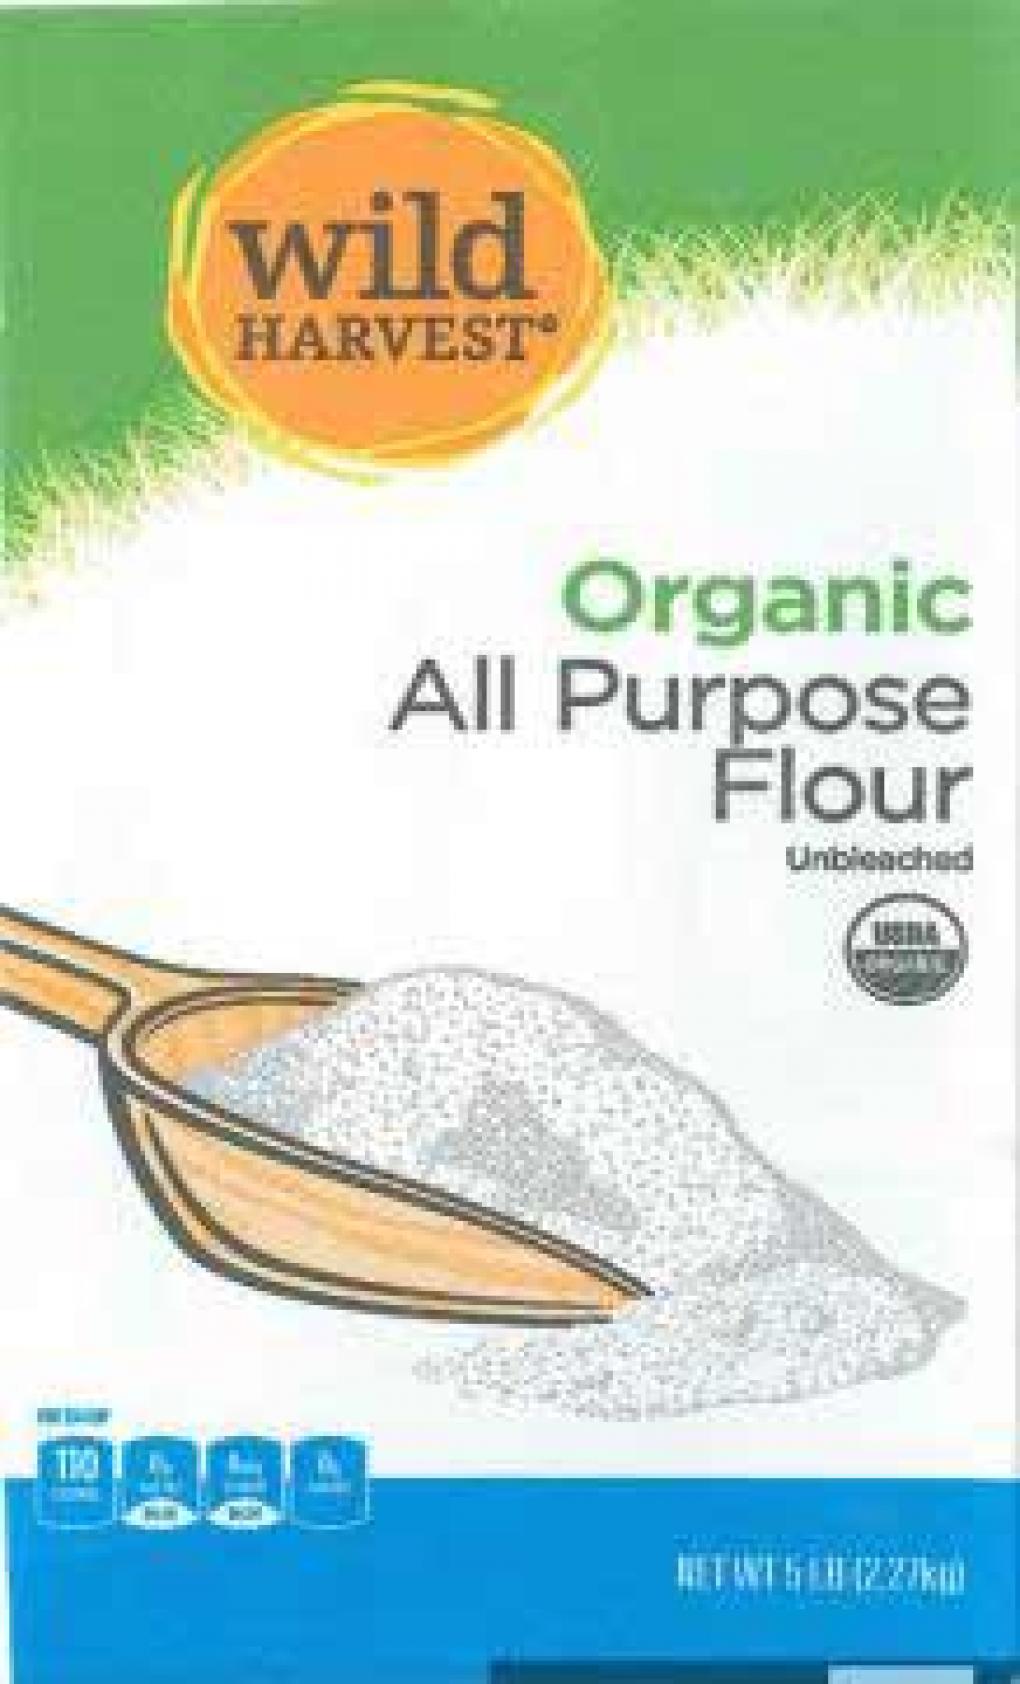 UNFI recalls Wild Harvest® Organic All-Purpose Flour due to E. coli